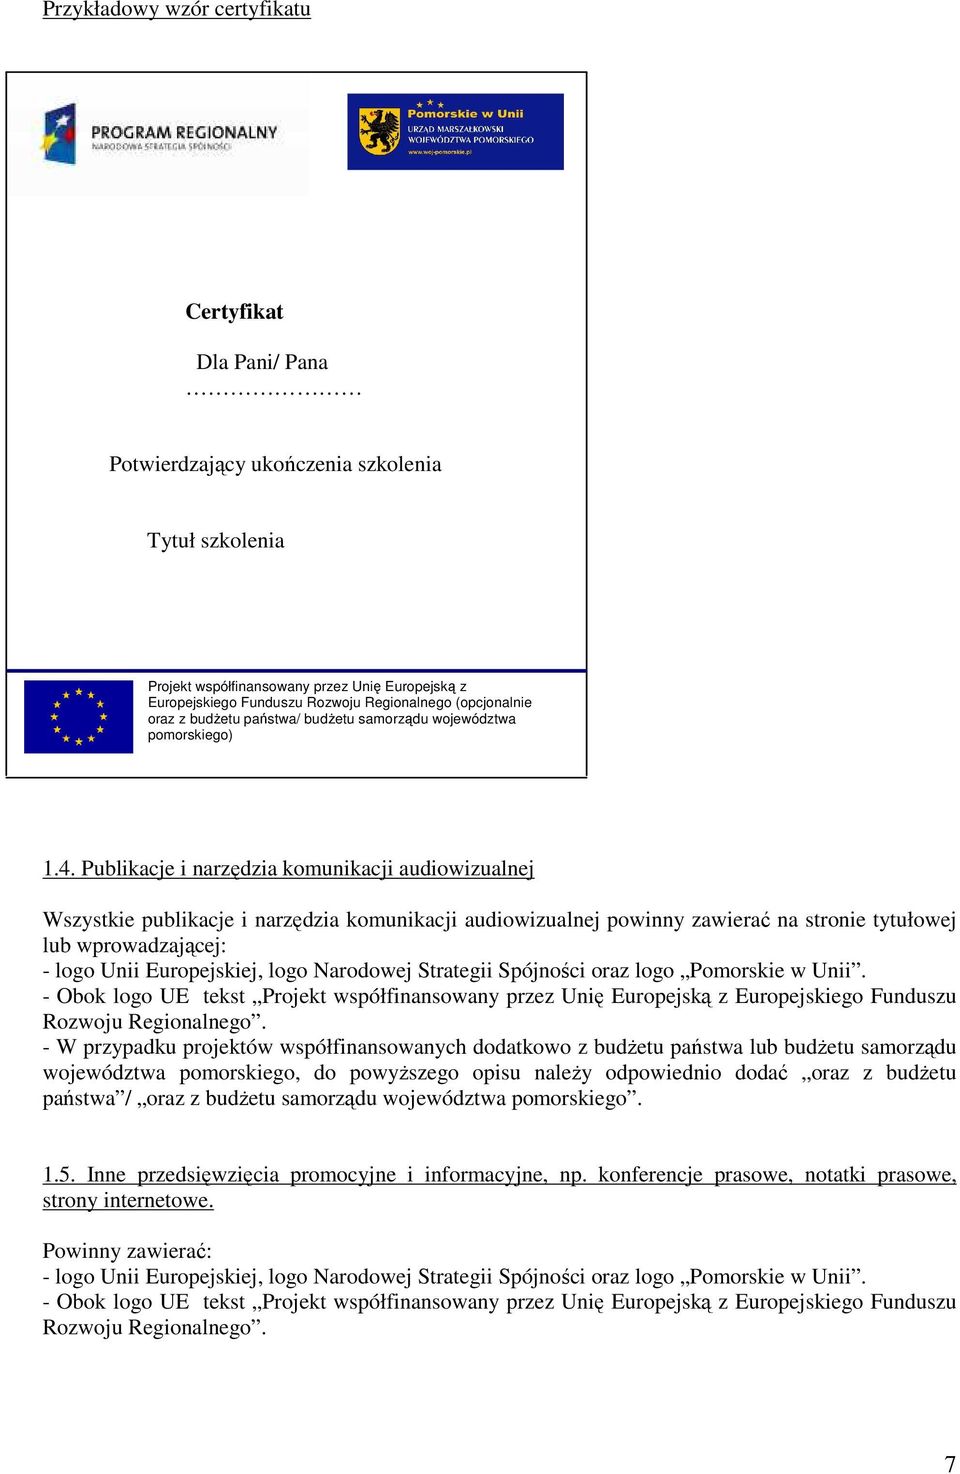 Publikacje i narzędzia komunikacji audiowizualnej Wszystkie publikacje i narzędzia komunikacji audiowizualnej powinny zawierać na stronie tytułowej lub wprowadzającej: - logo Unii Europejskiej, logo